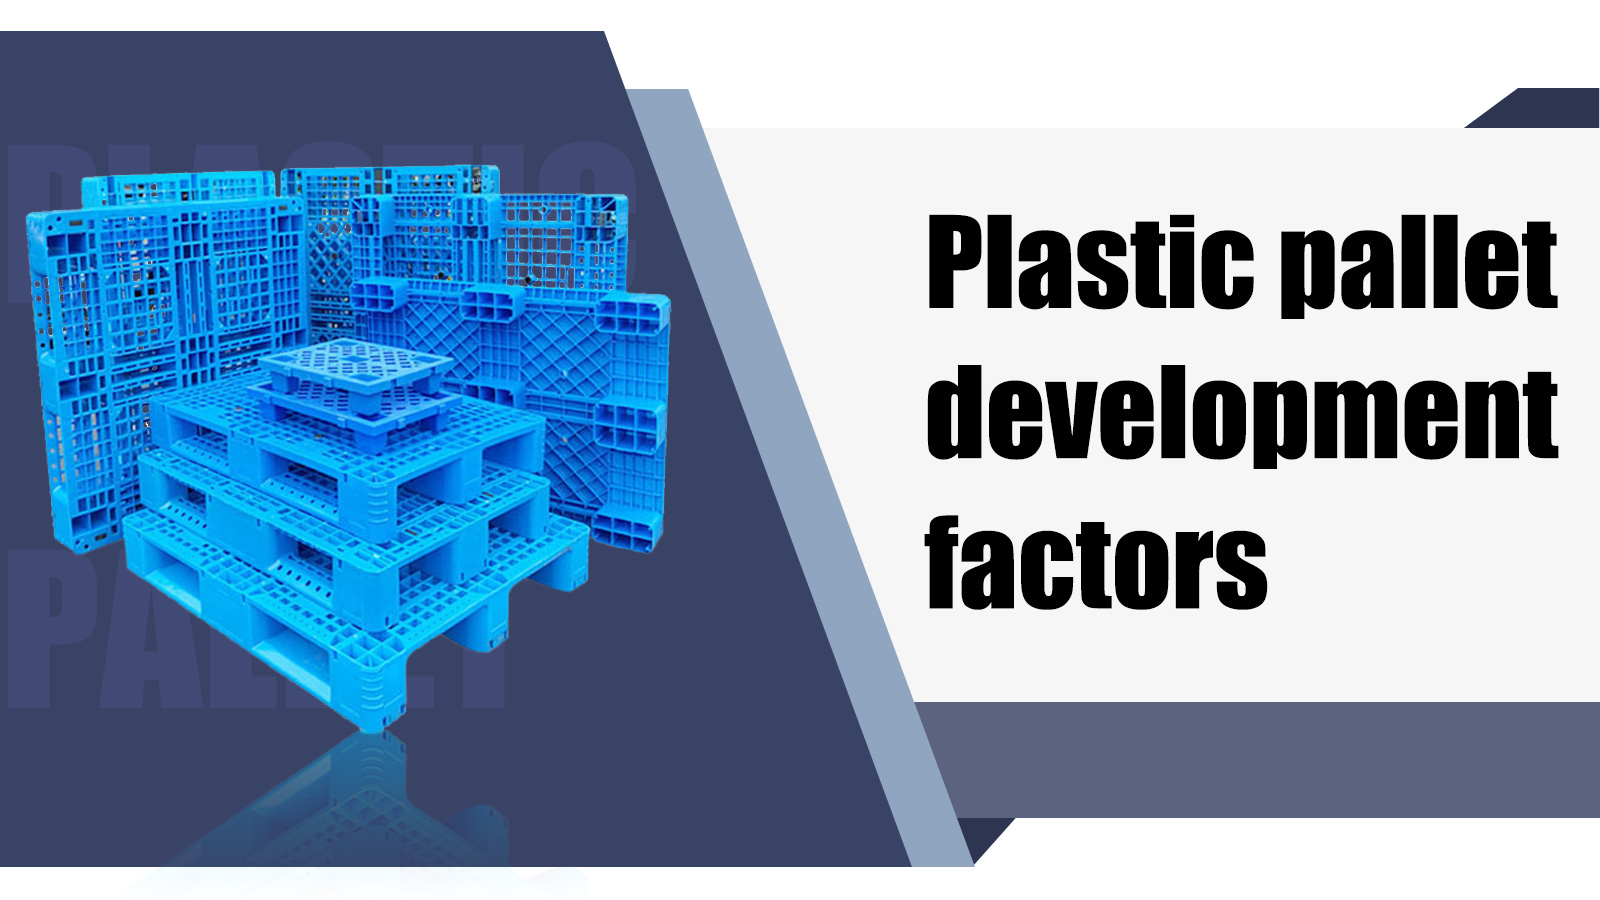 Plastic pallet development factors